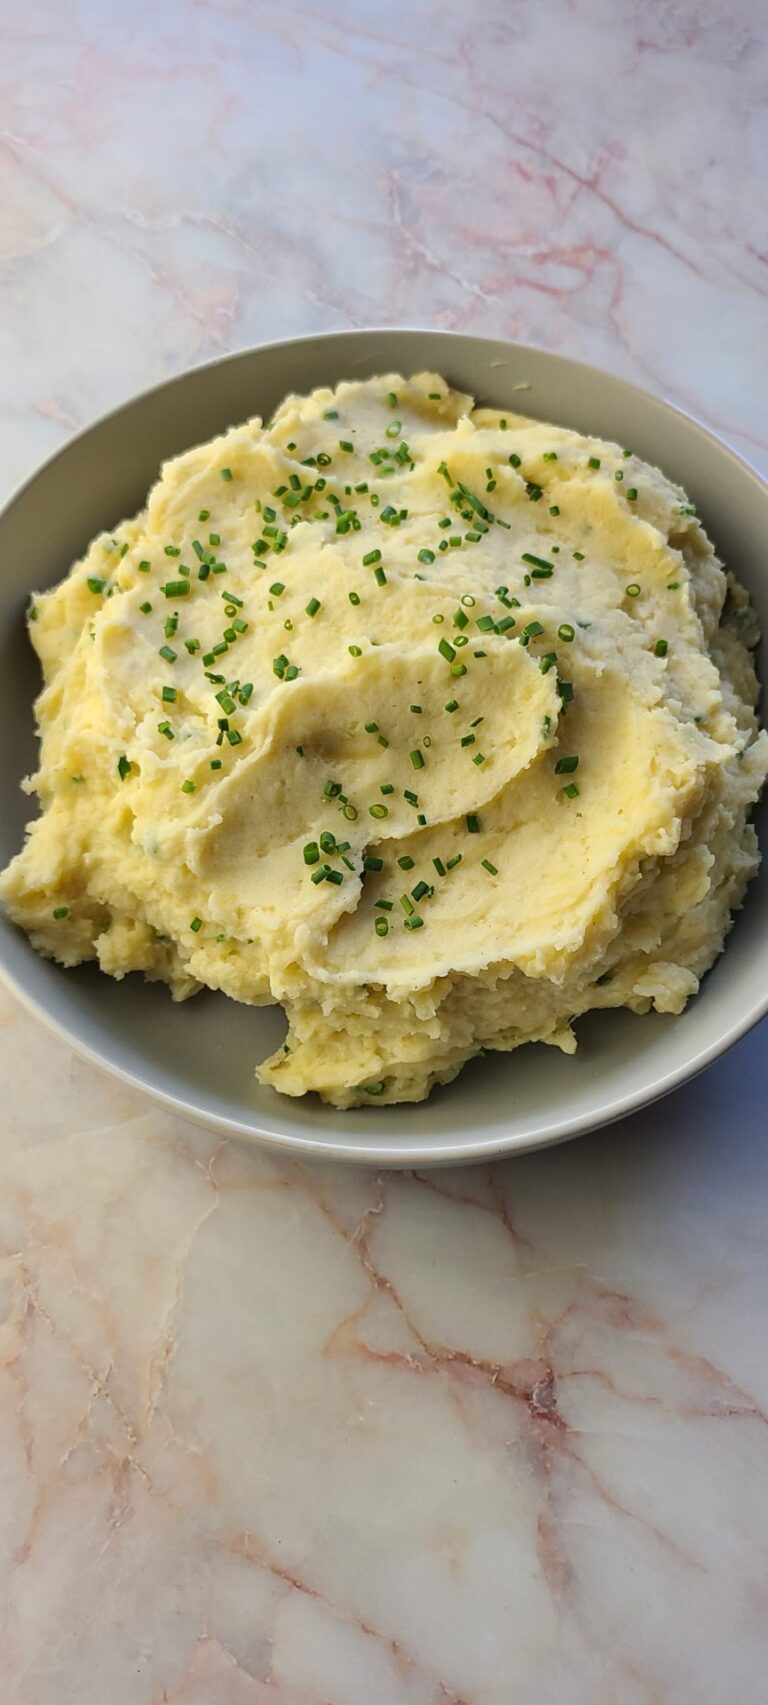 Potato masher - Wikipedia